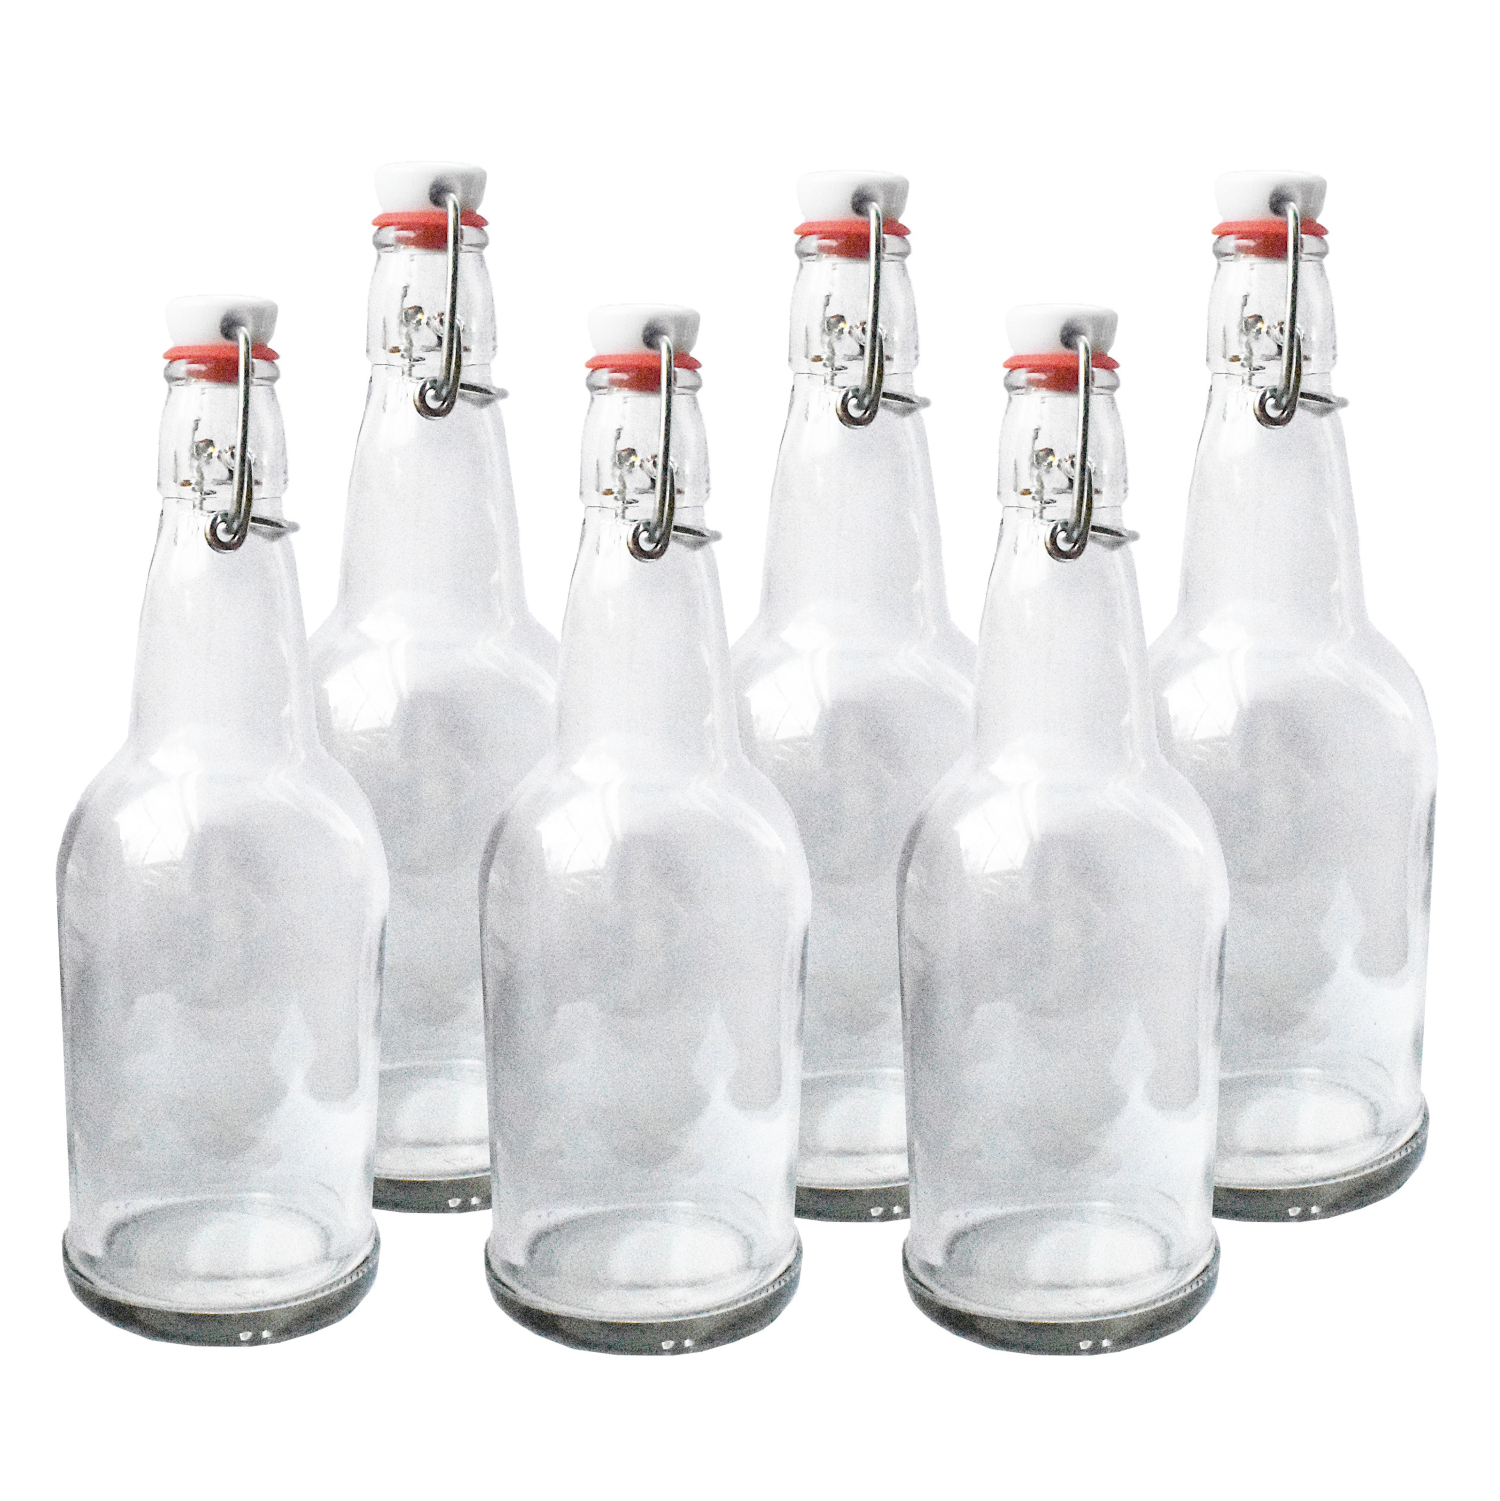 https://buchabrewers.com/wp-content/uploads/2020/08/Kombucha-Bottles-Flip-Top-Clear-6-Pack-SC.jpg